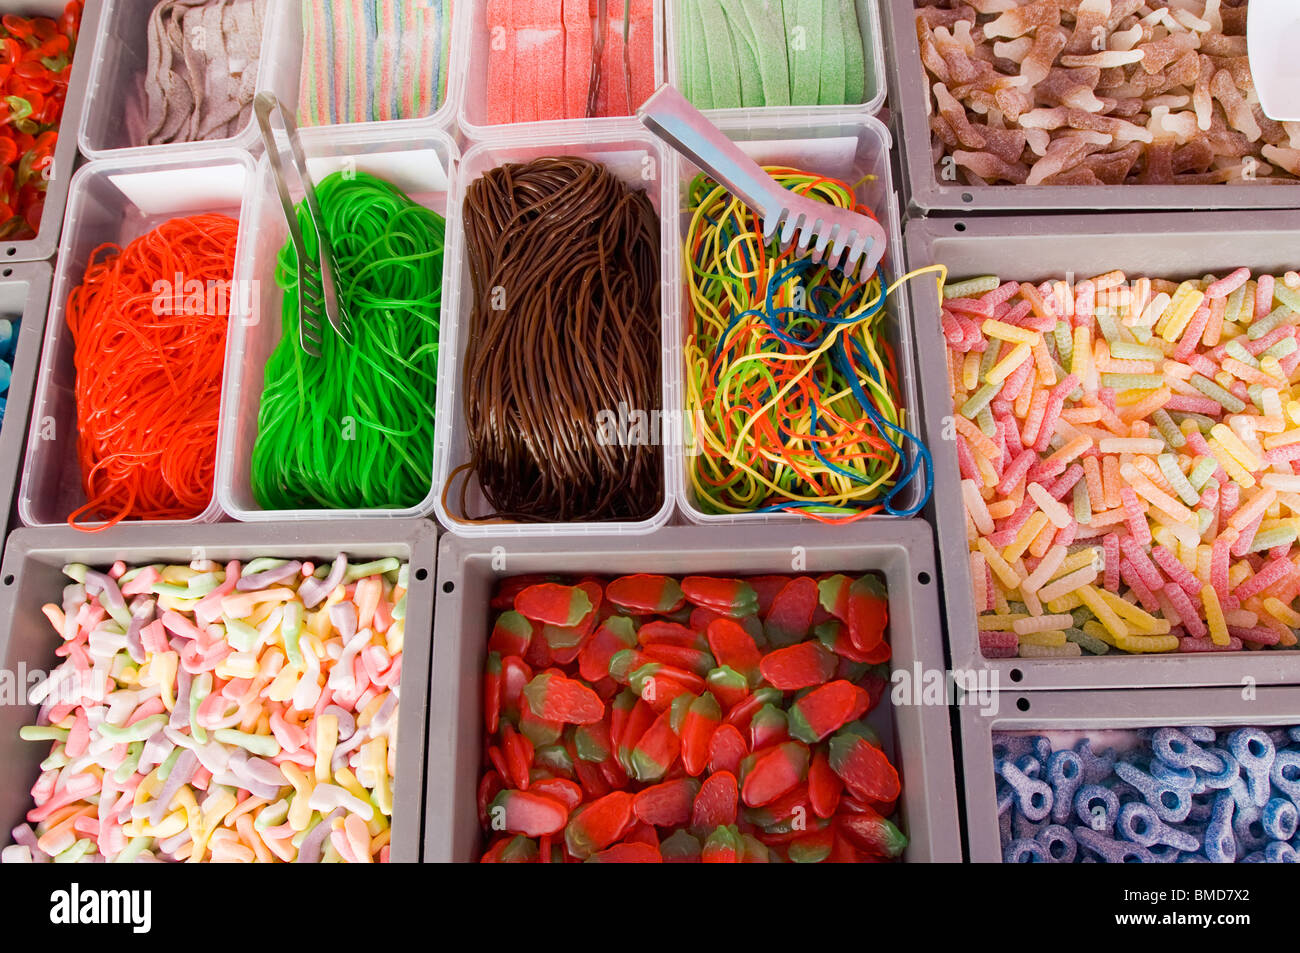 Détail de l'image des bonbons sur les ventes dans un marché Banque D'Images